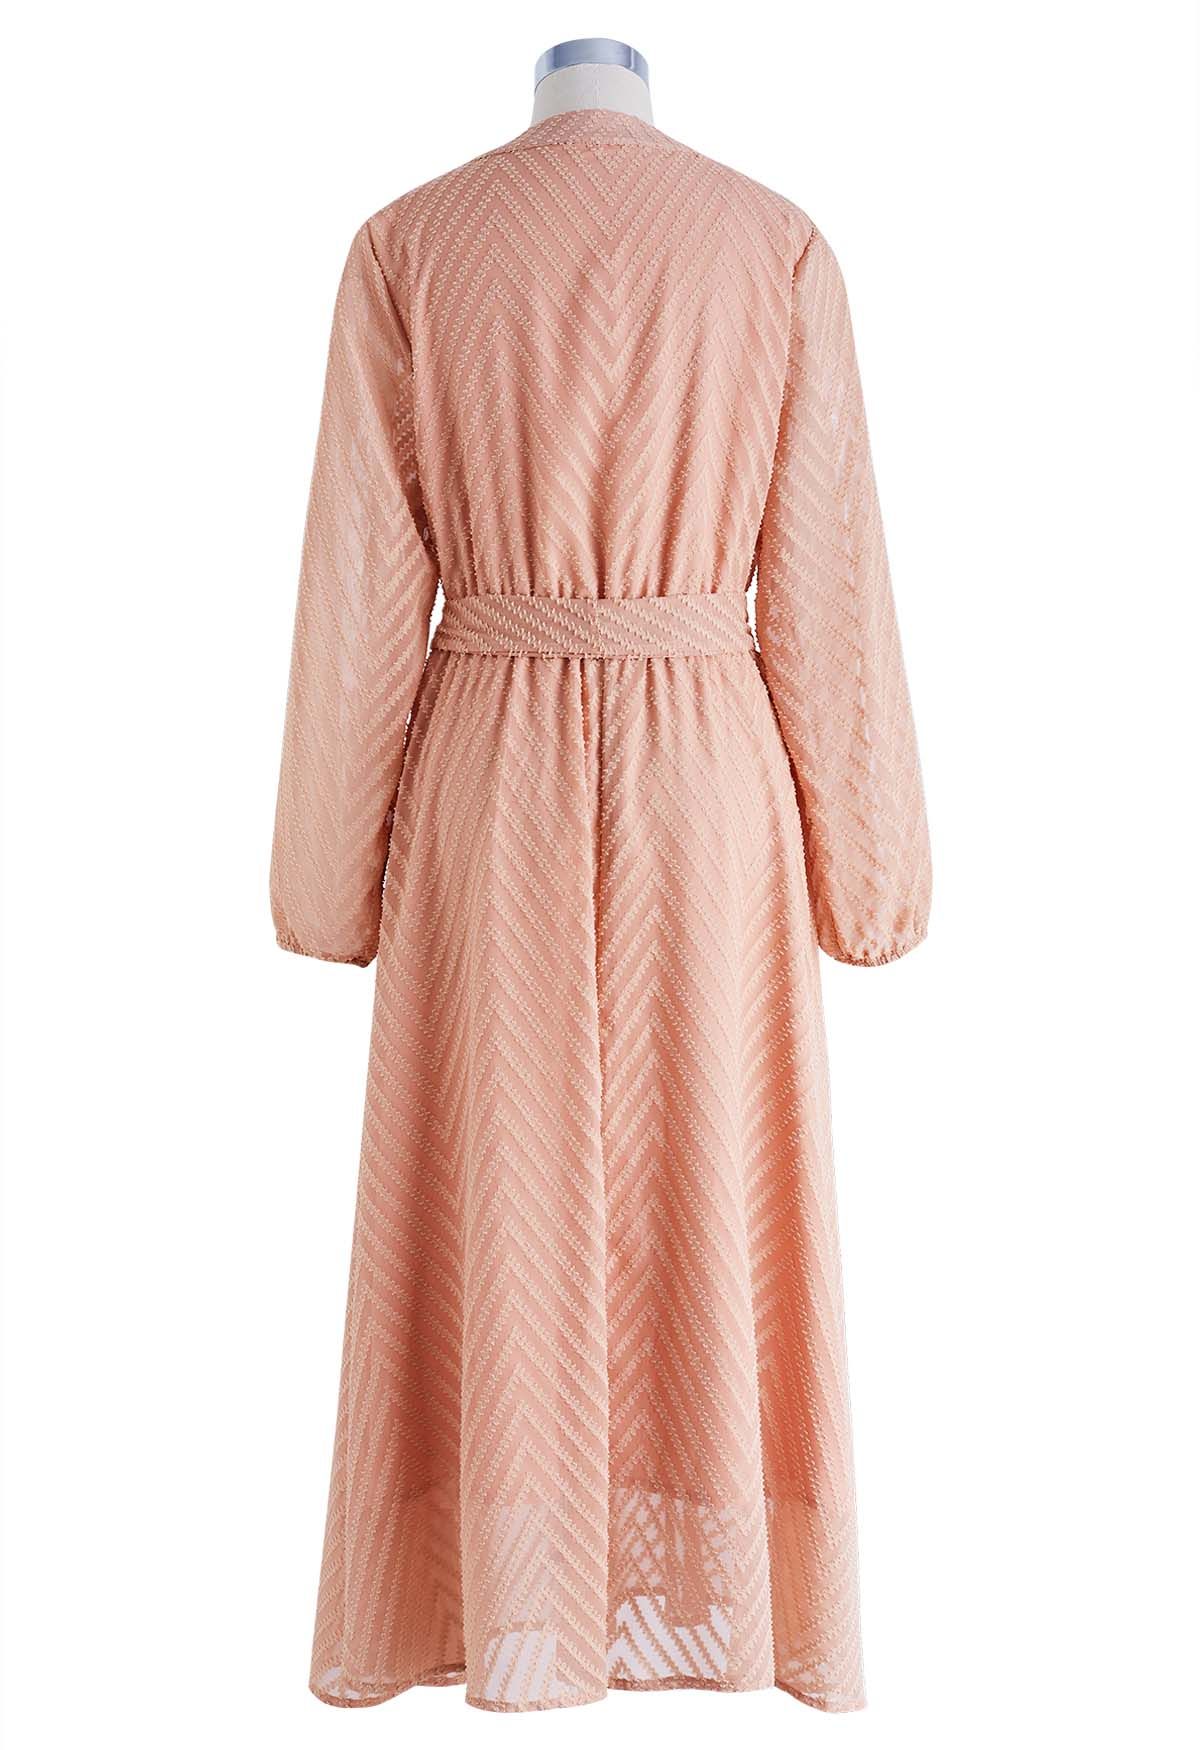 Zigzag Flock Dot Tie Waist Midi Dress in Apricot